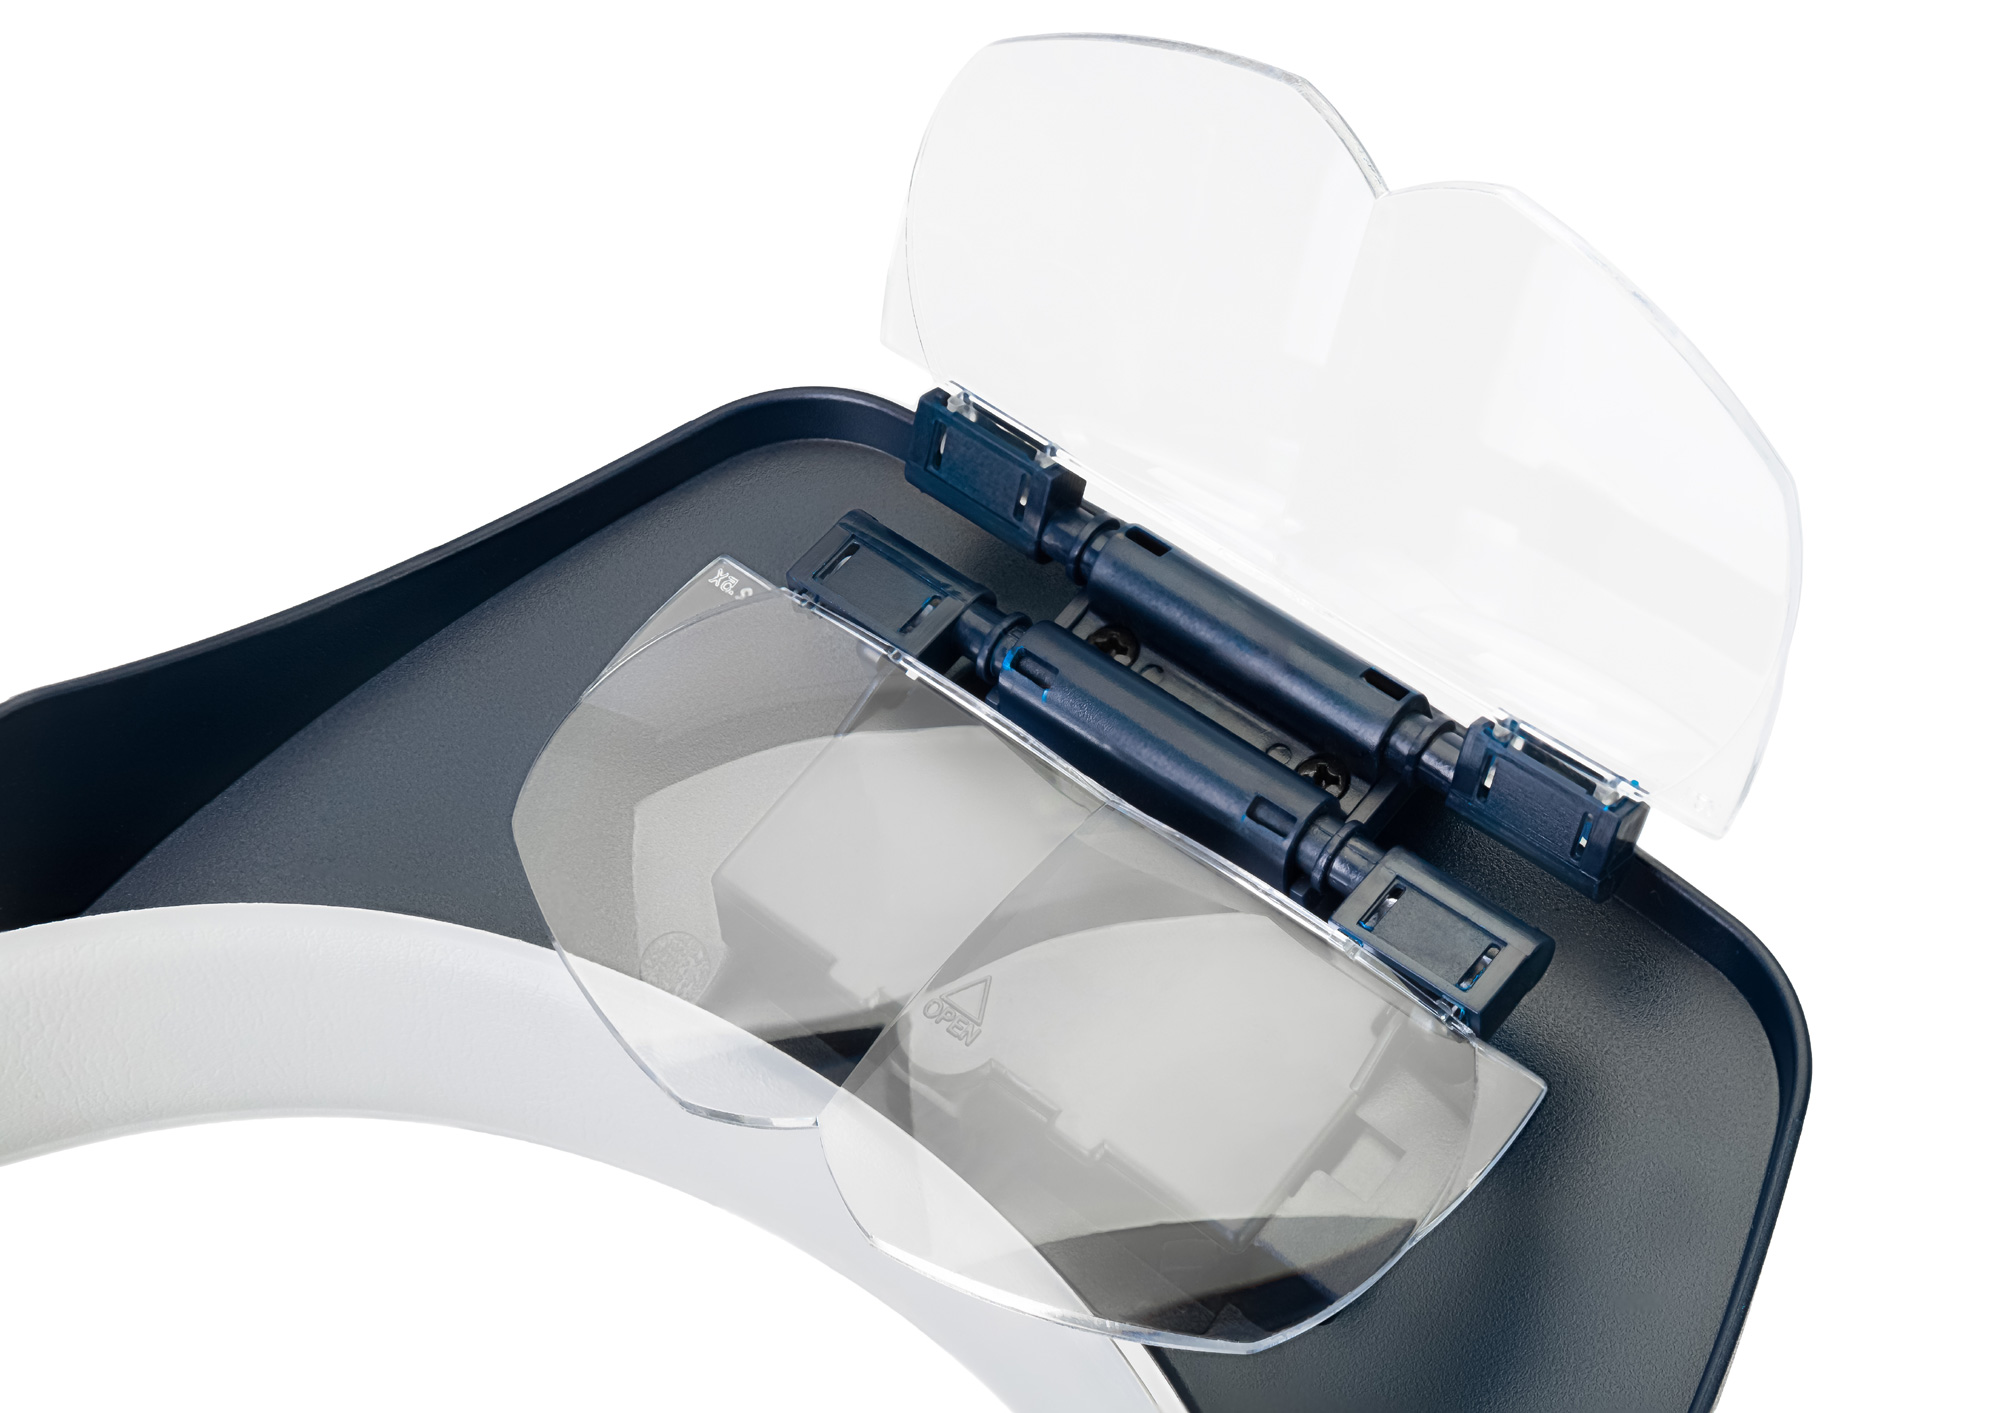 Optická soustava lupy Discovery Crafts DHR 30 se skládá ze 4 obdélníkových čoček k prohlížení oběma očima.